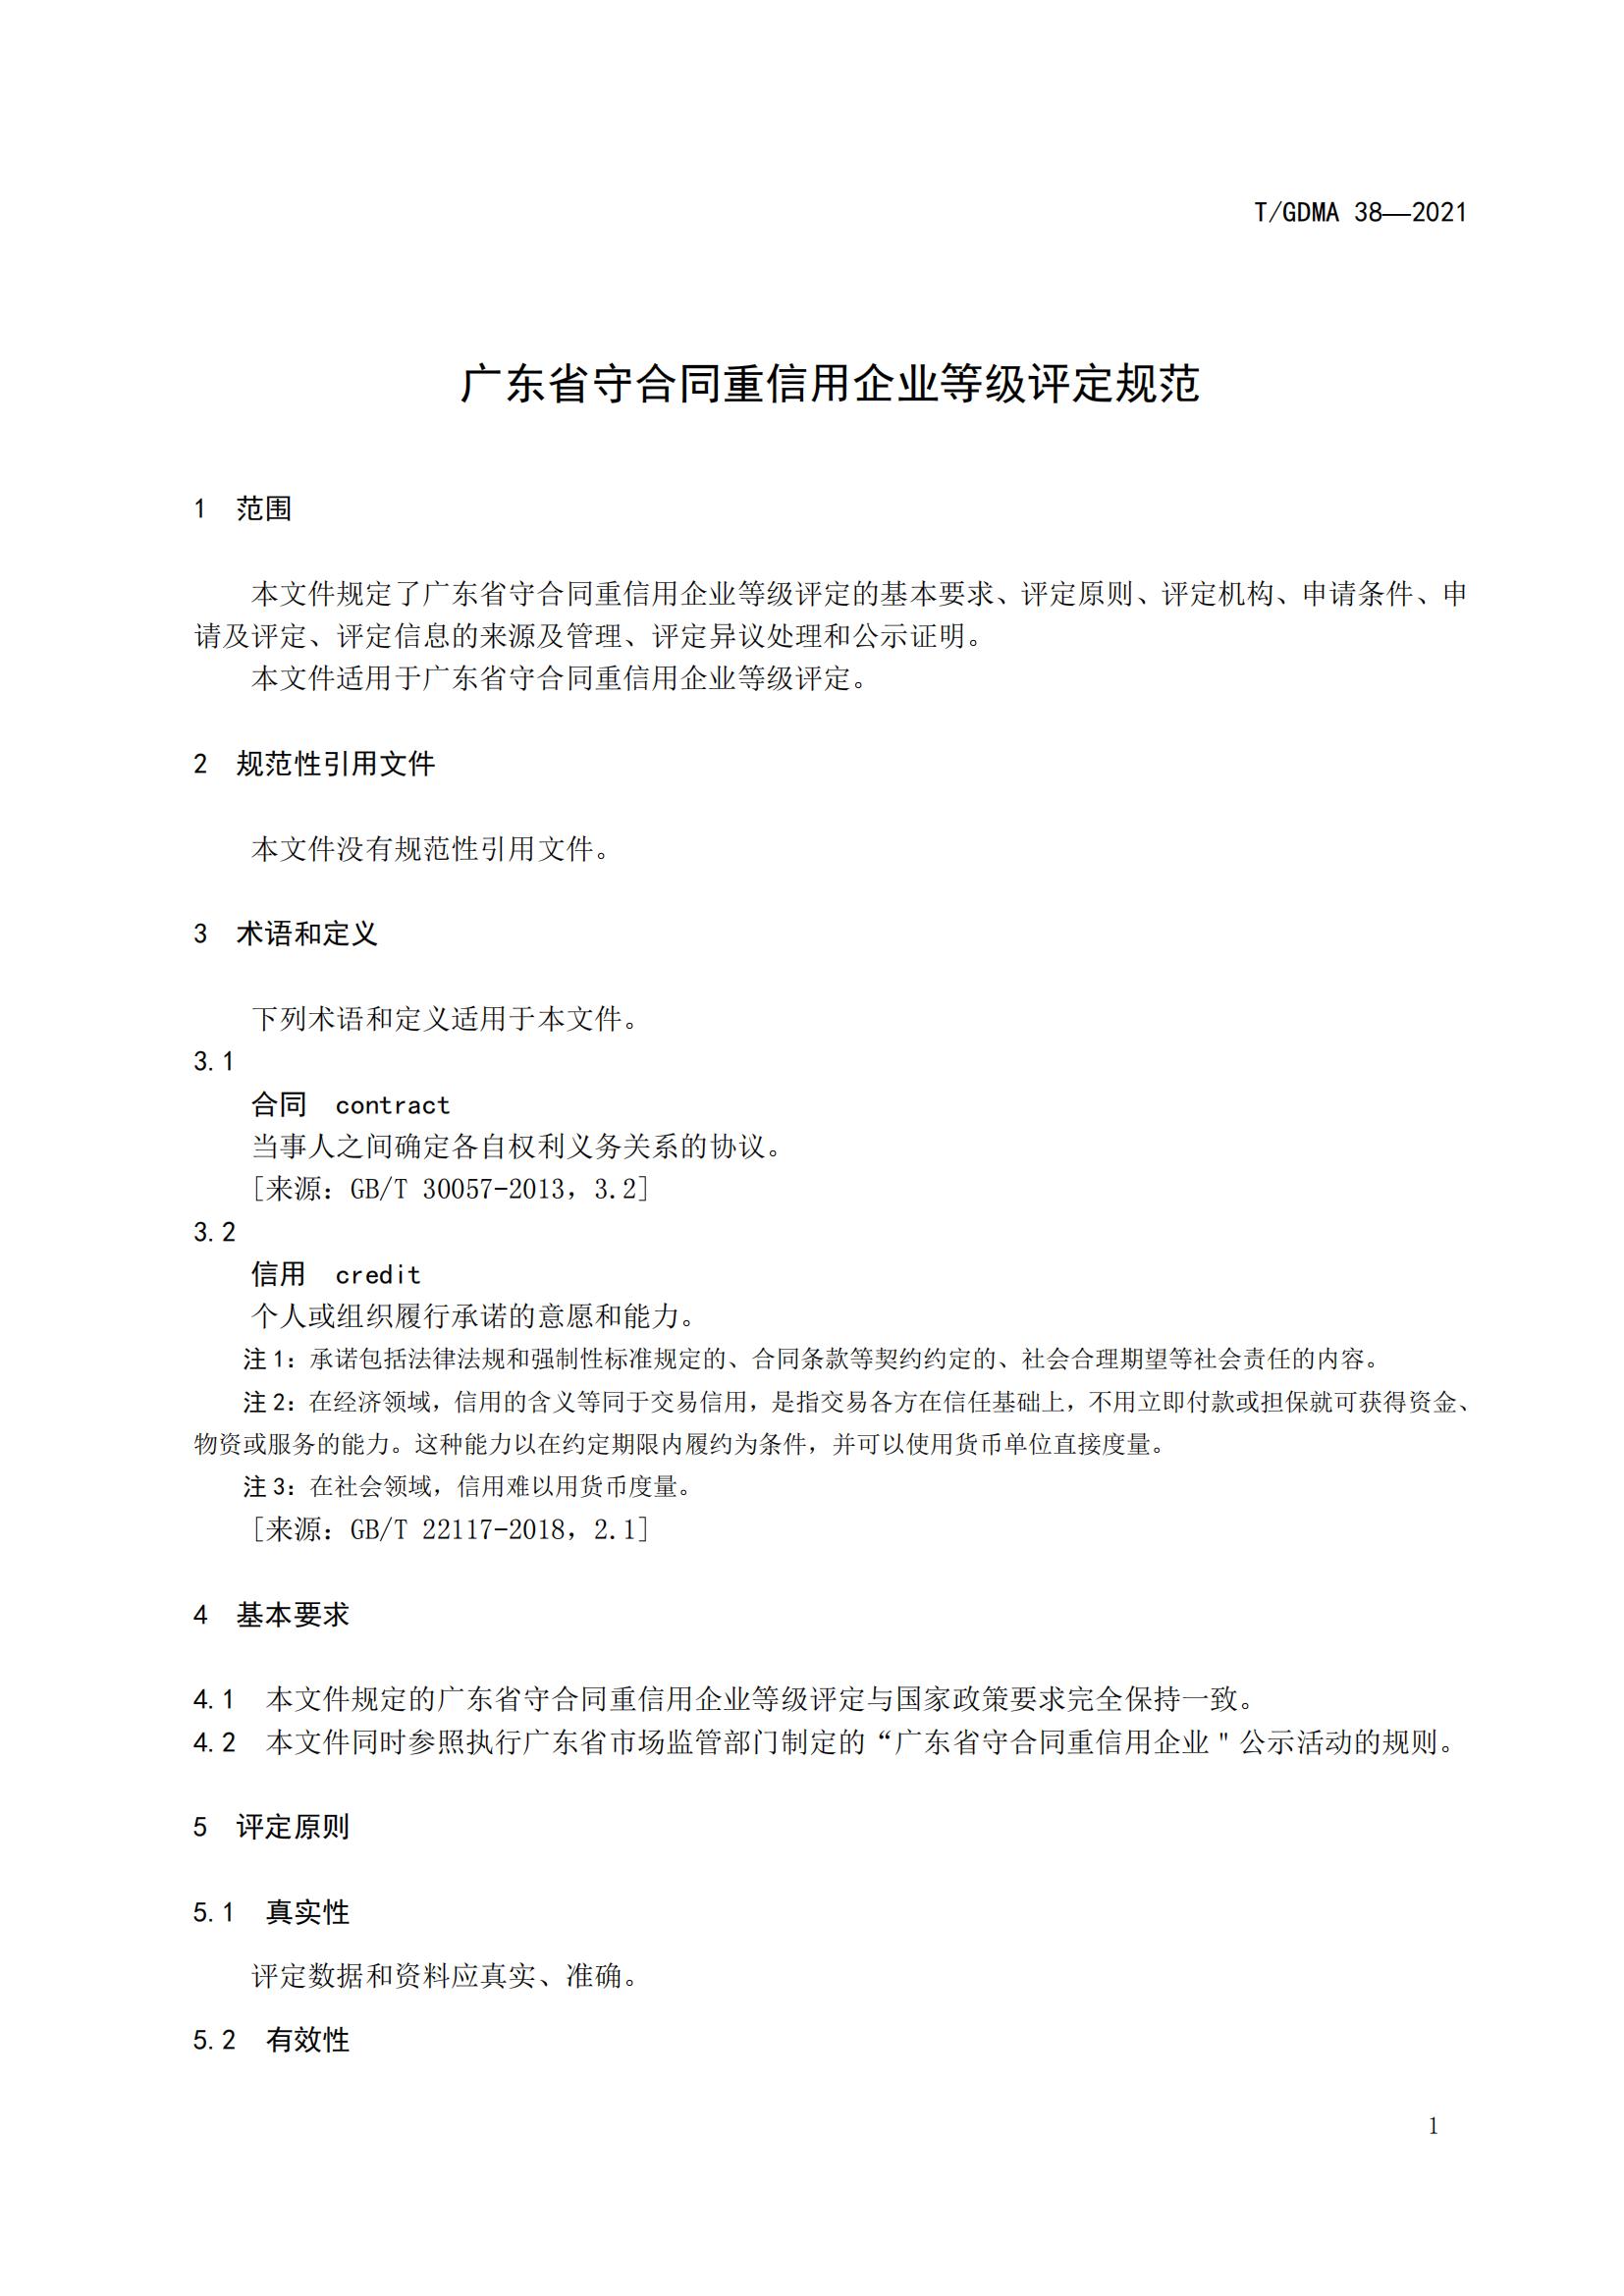 TGDMA 38 广东省守合同重信用企业等级评定规范-发布稿_04.jpg